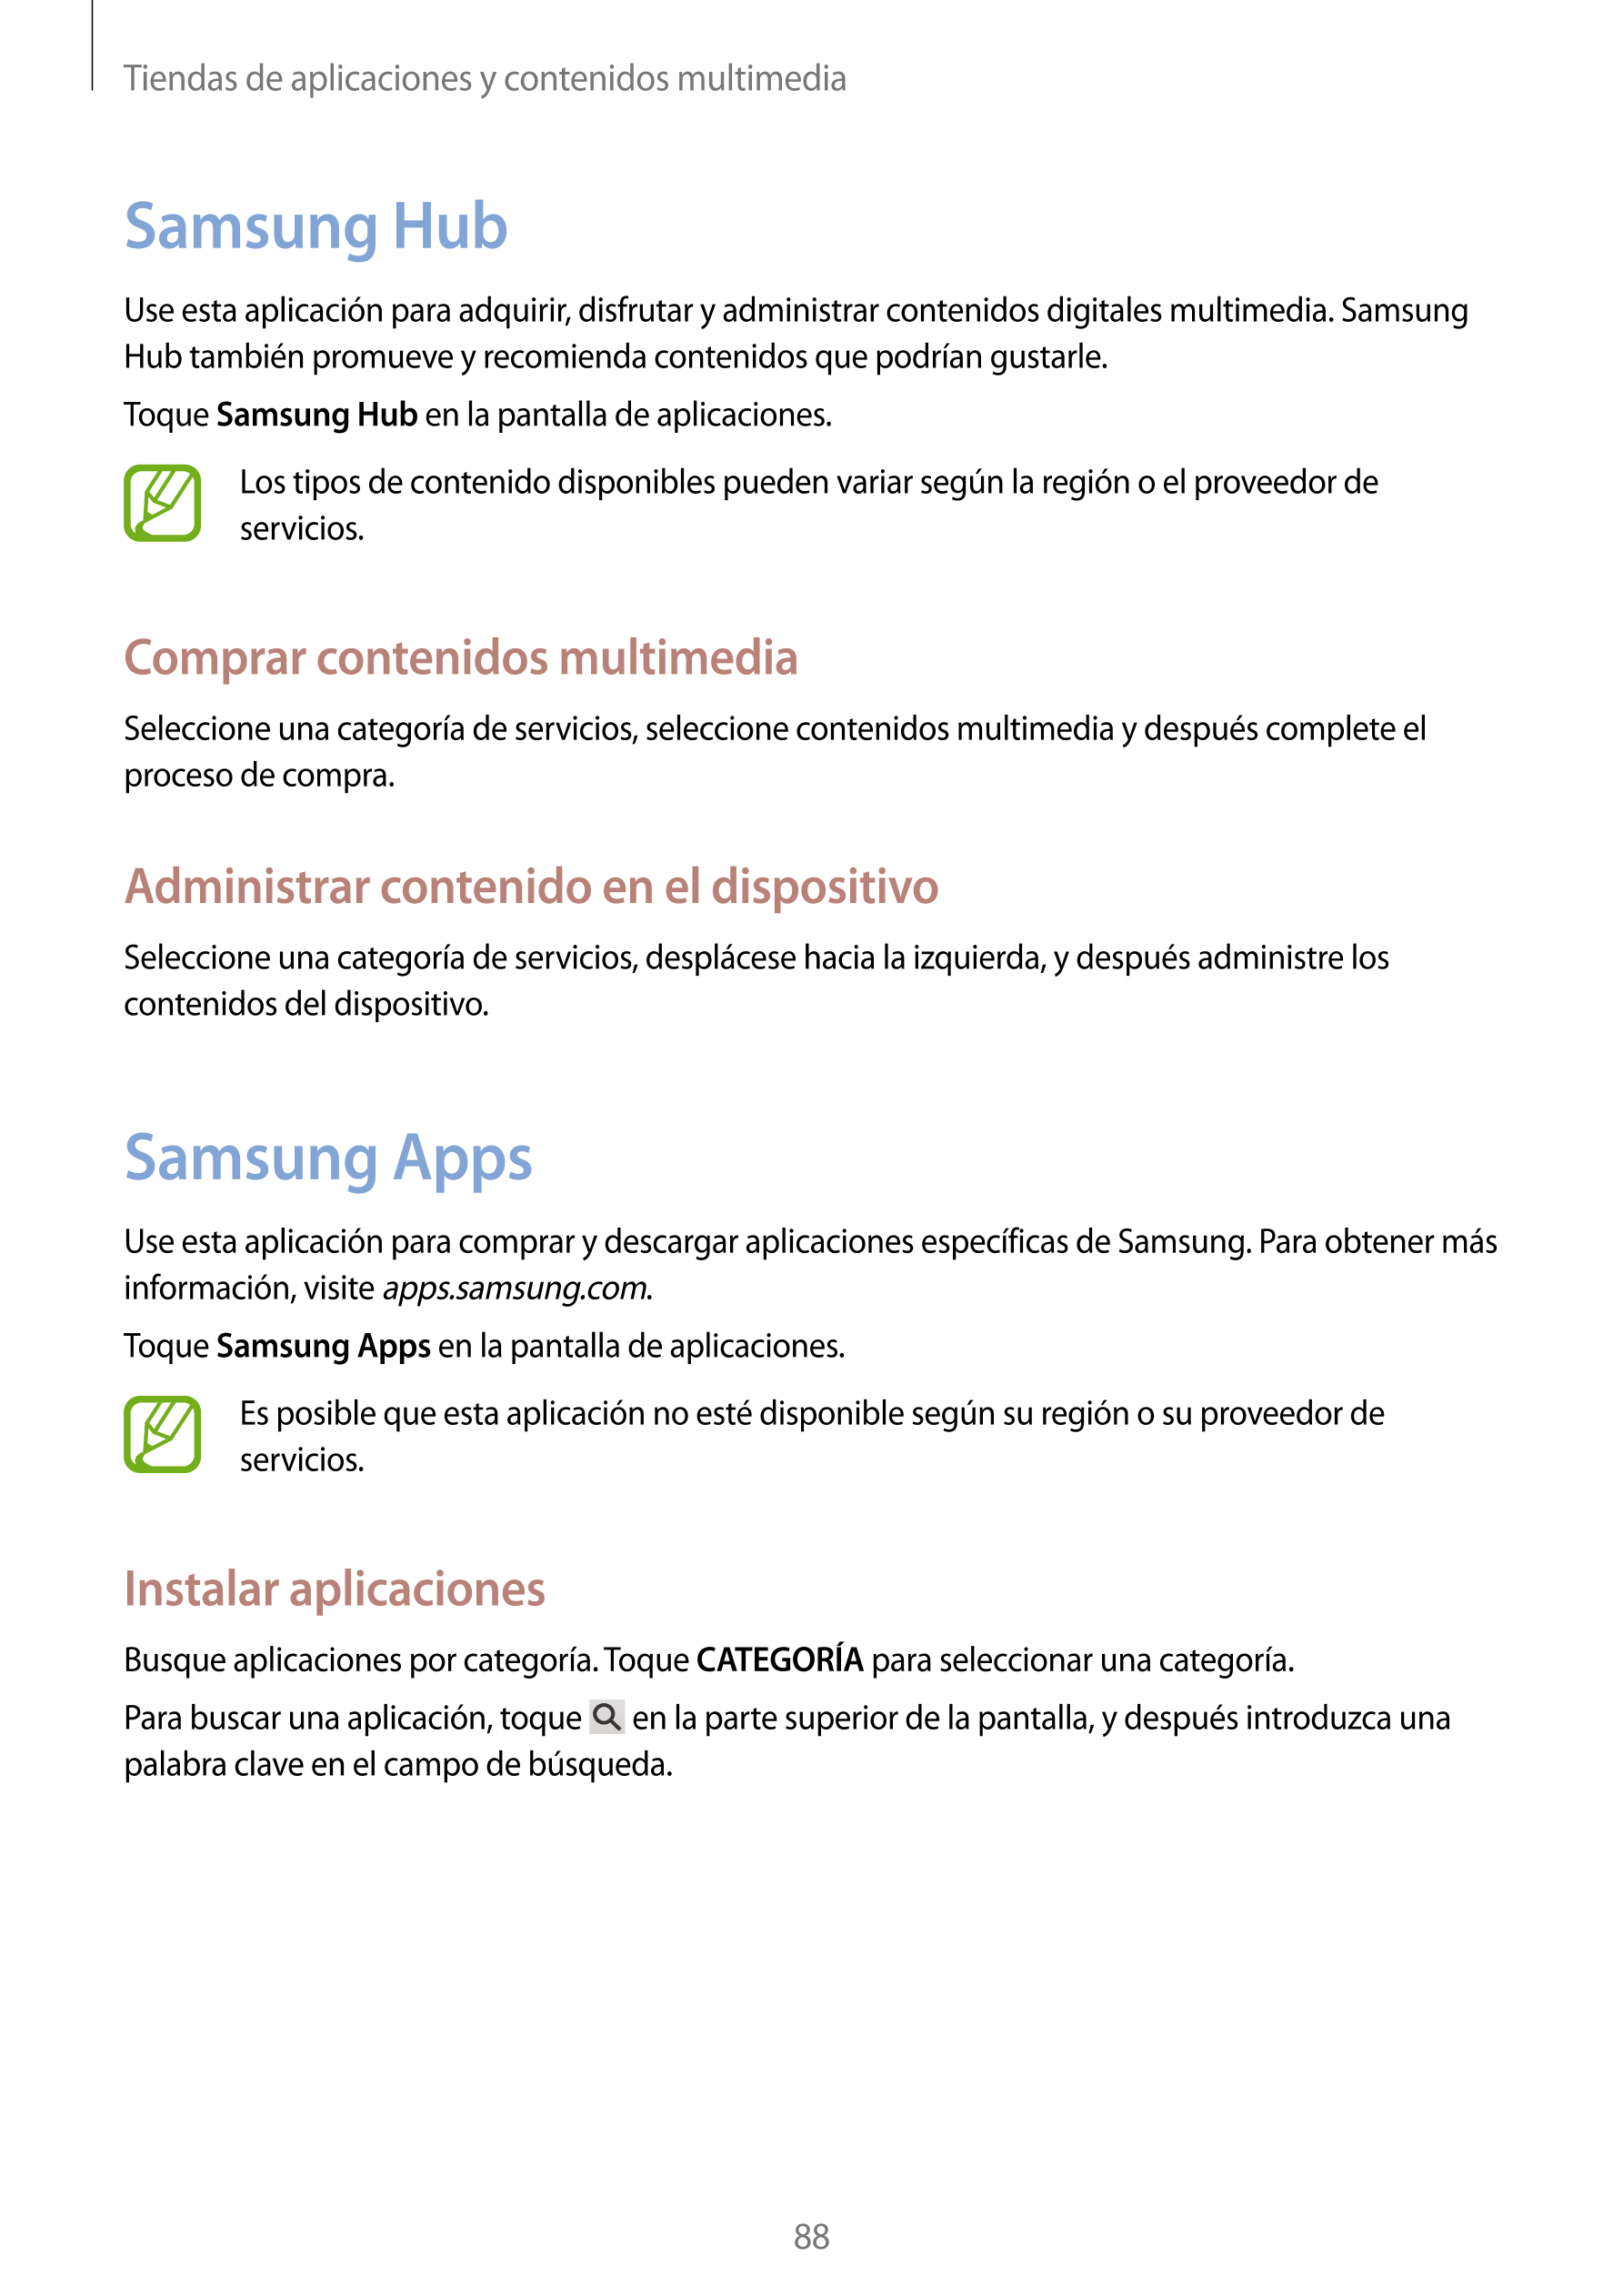 Tiendas de aplicaciones y contenidos multimedia
Samsung Hub
Use esta aplicación para adquirir, disfrutar y administrar contenido